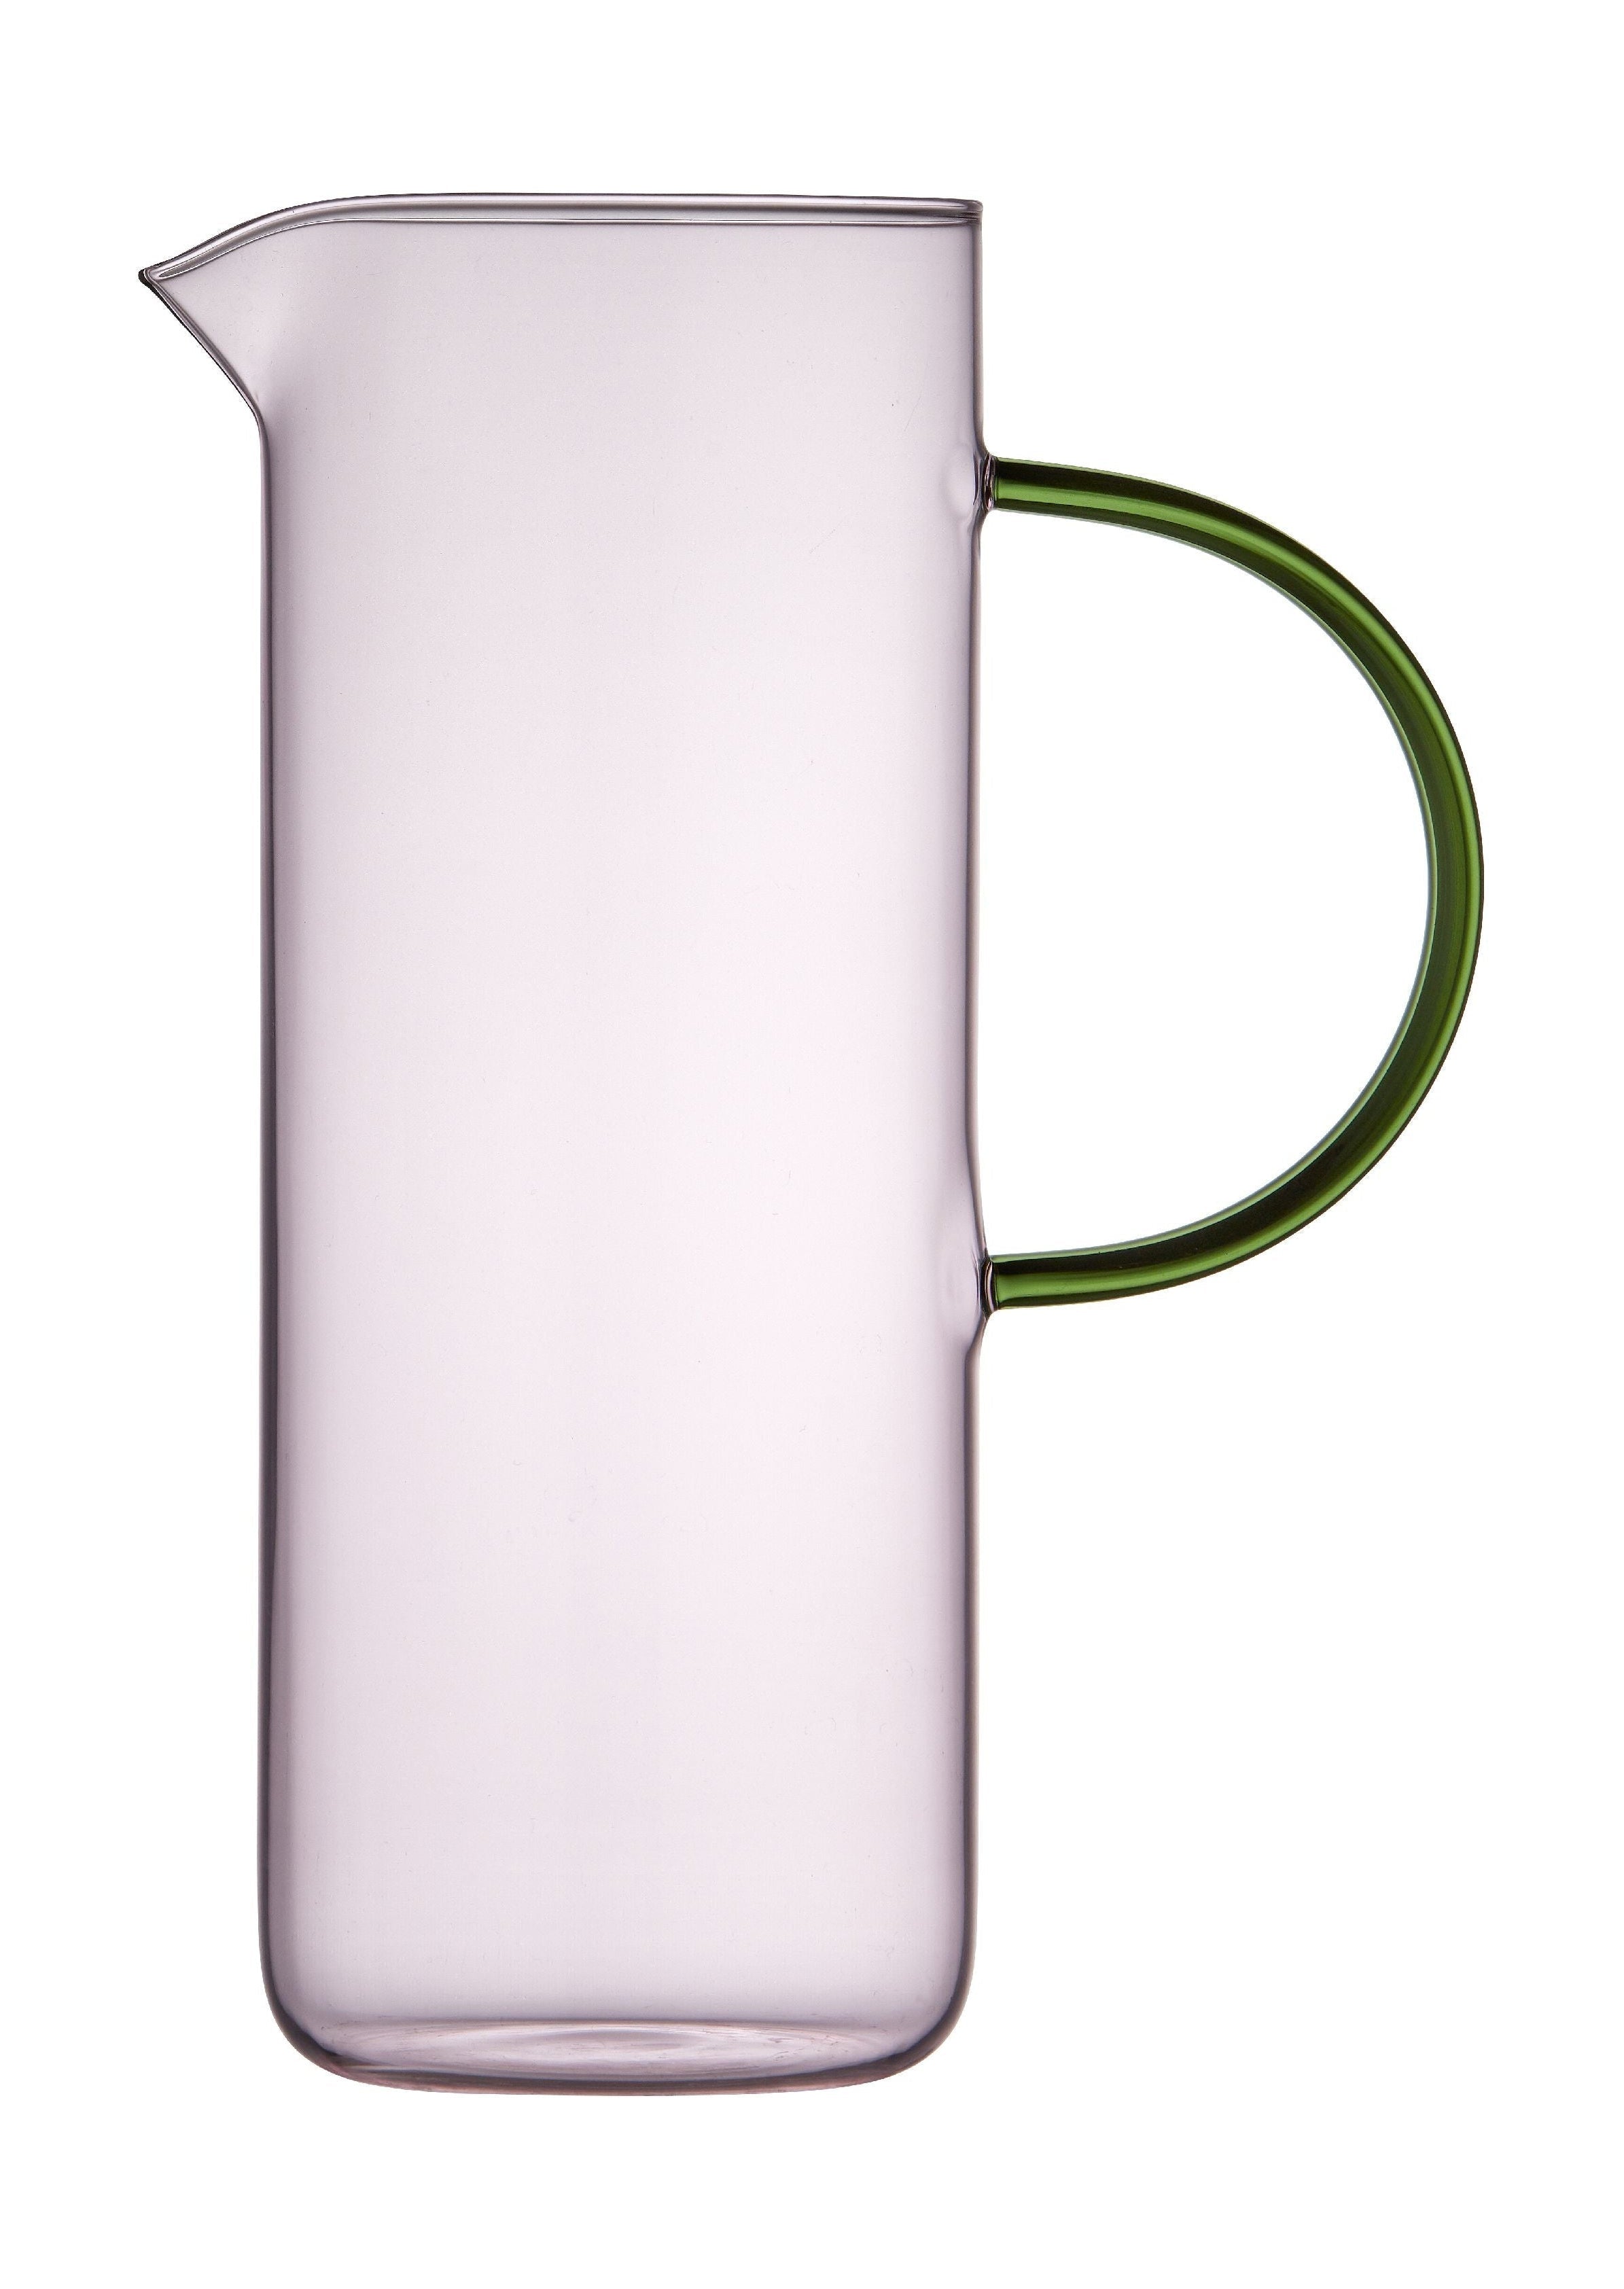 Lyngby Glas Torino Glass džbán 1,1 l, růžový/zelený